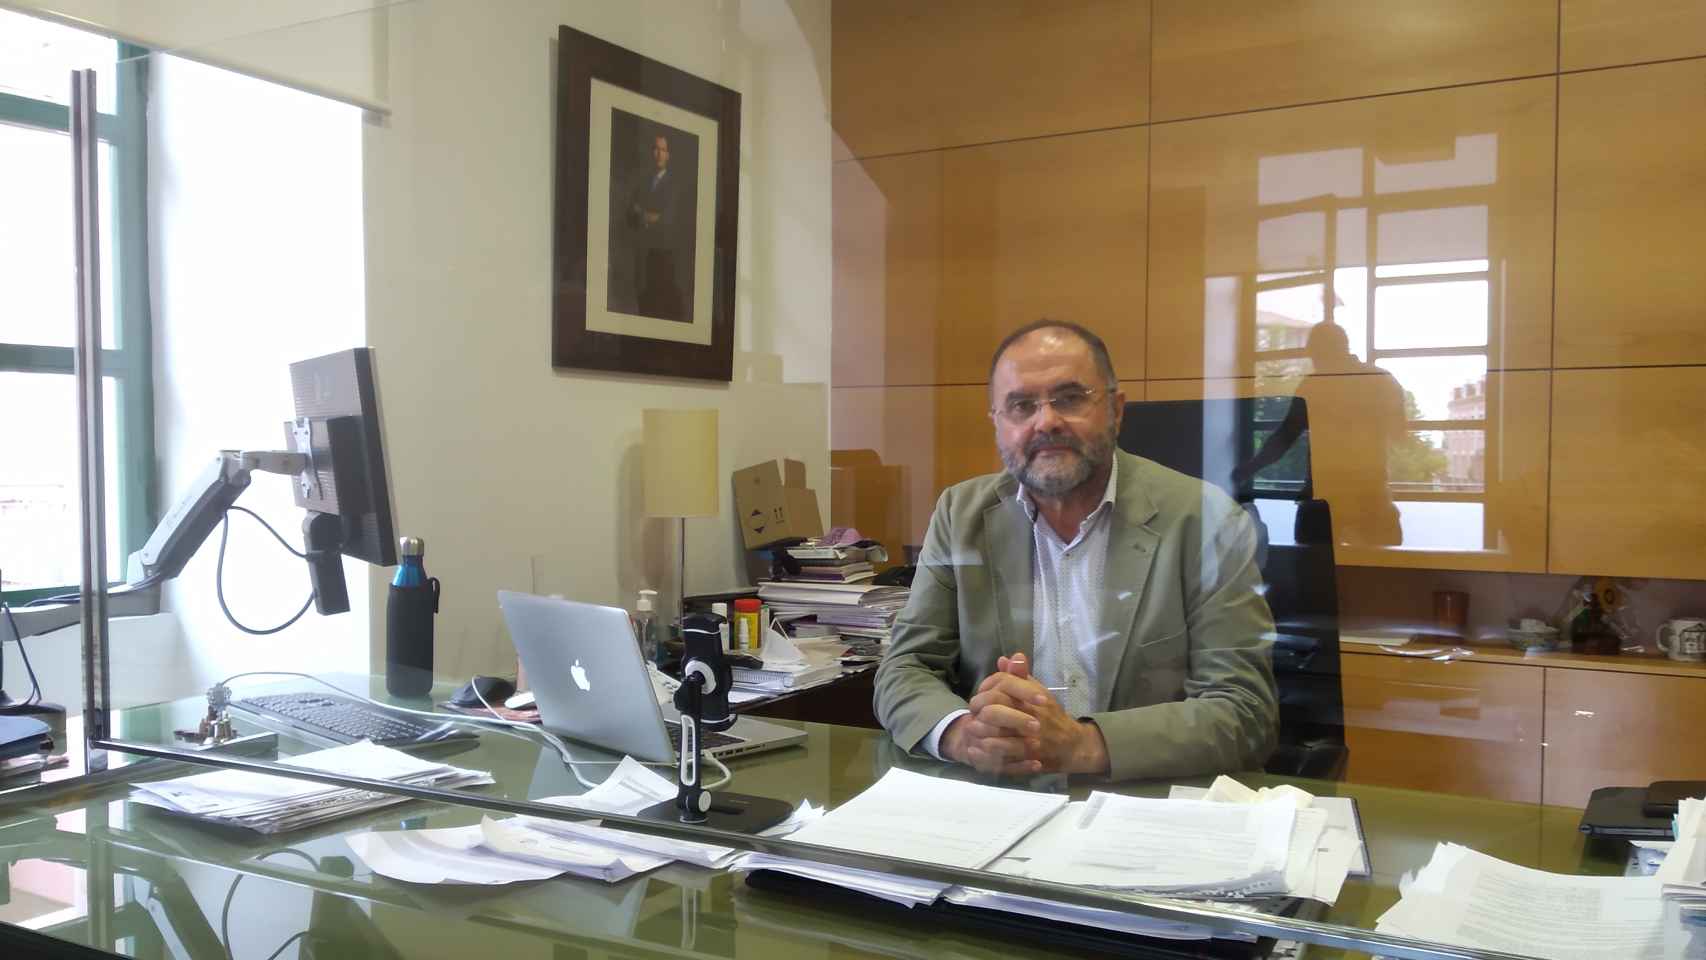 El alcalde, Juan José Cánovas, parapetado en su despacho tras una mampara de cristal para protegerse del virus.